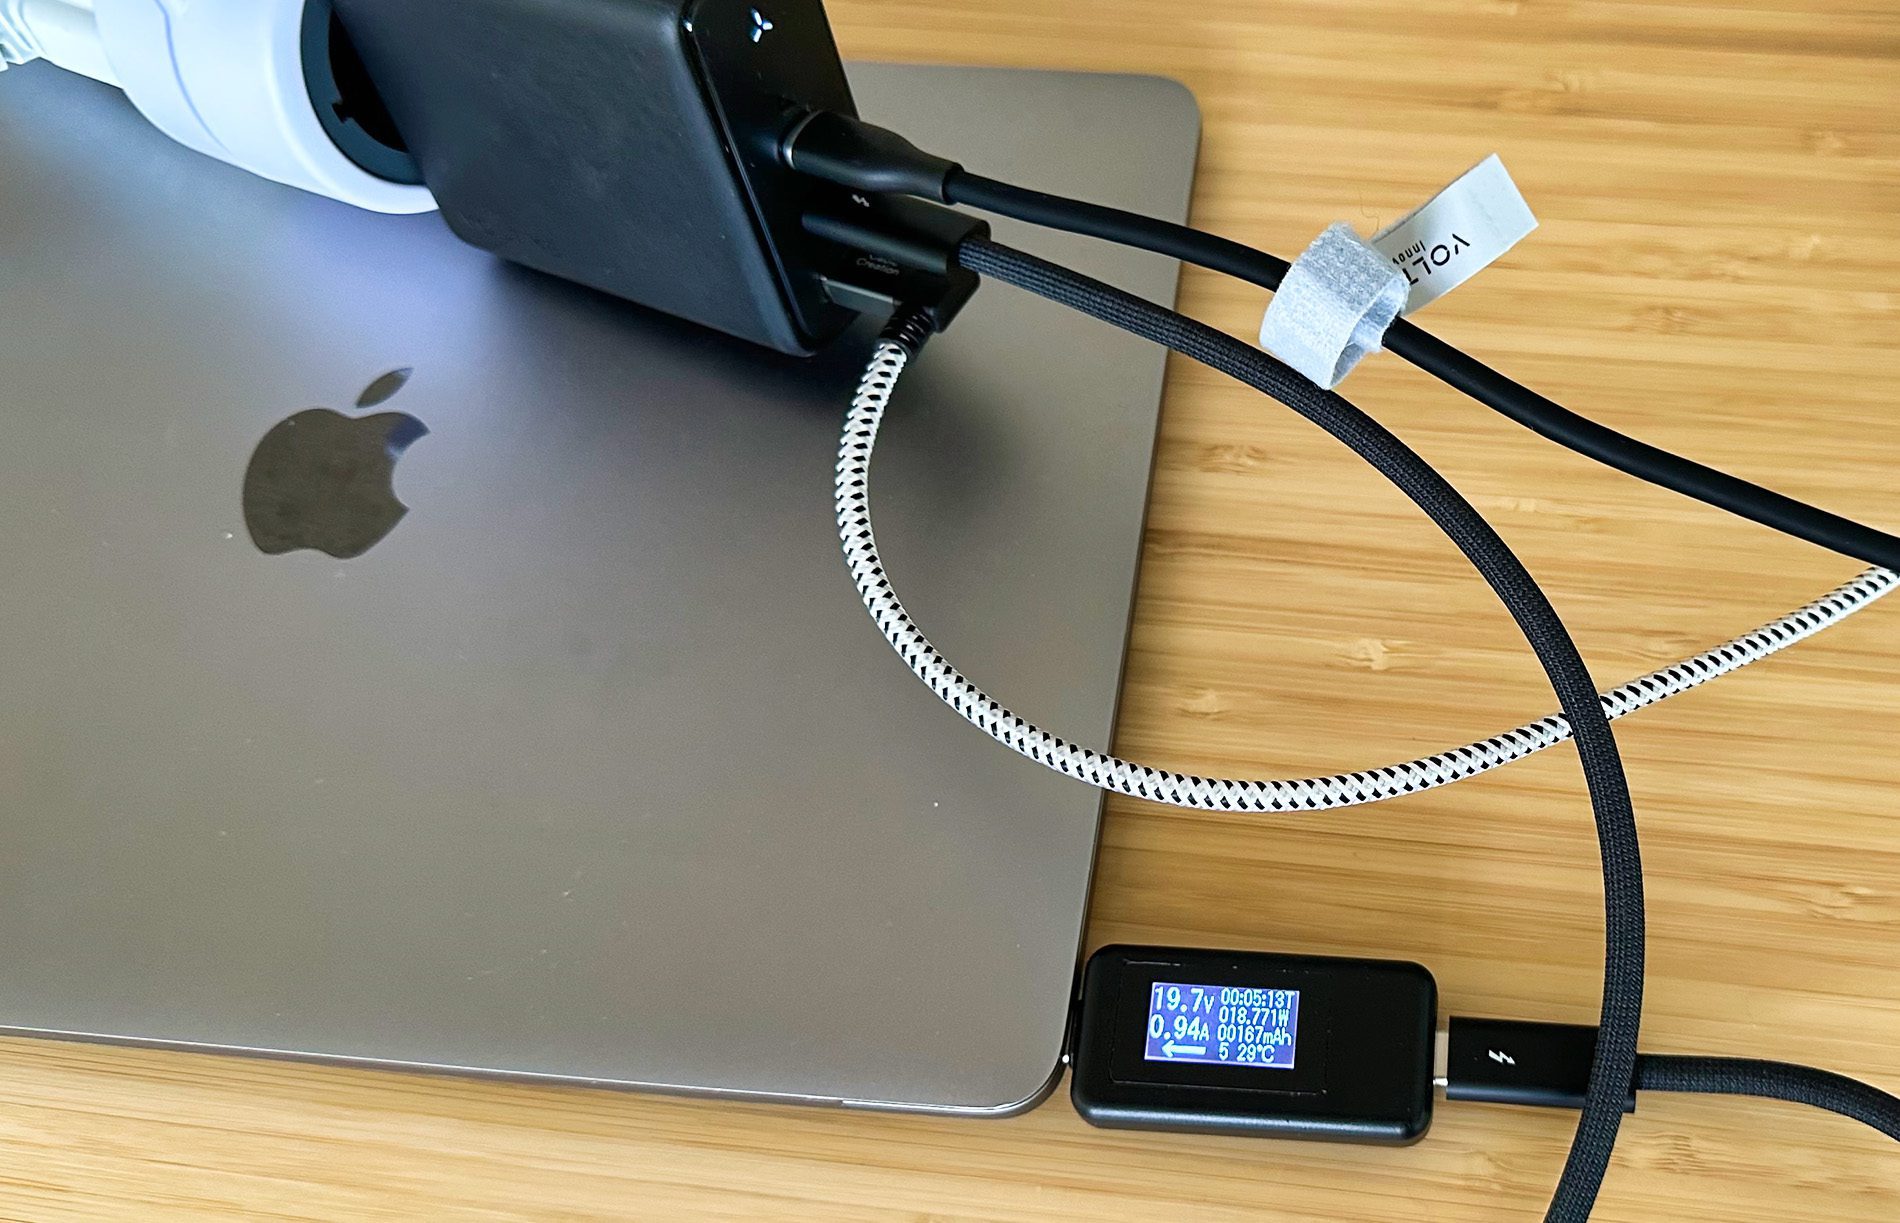 Selbst bei voller Belegung mit MacBook Pro und USB-Lastwiderstand liefert der zweite USB-C-Port noch bis zu 45 Watt Leistung.